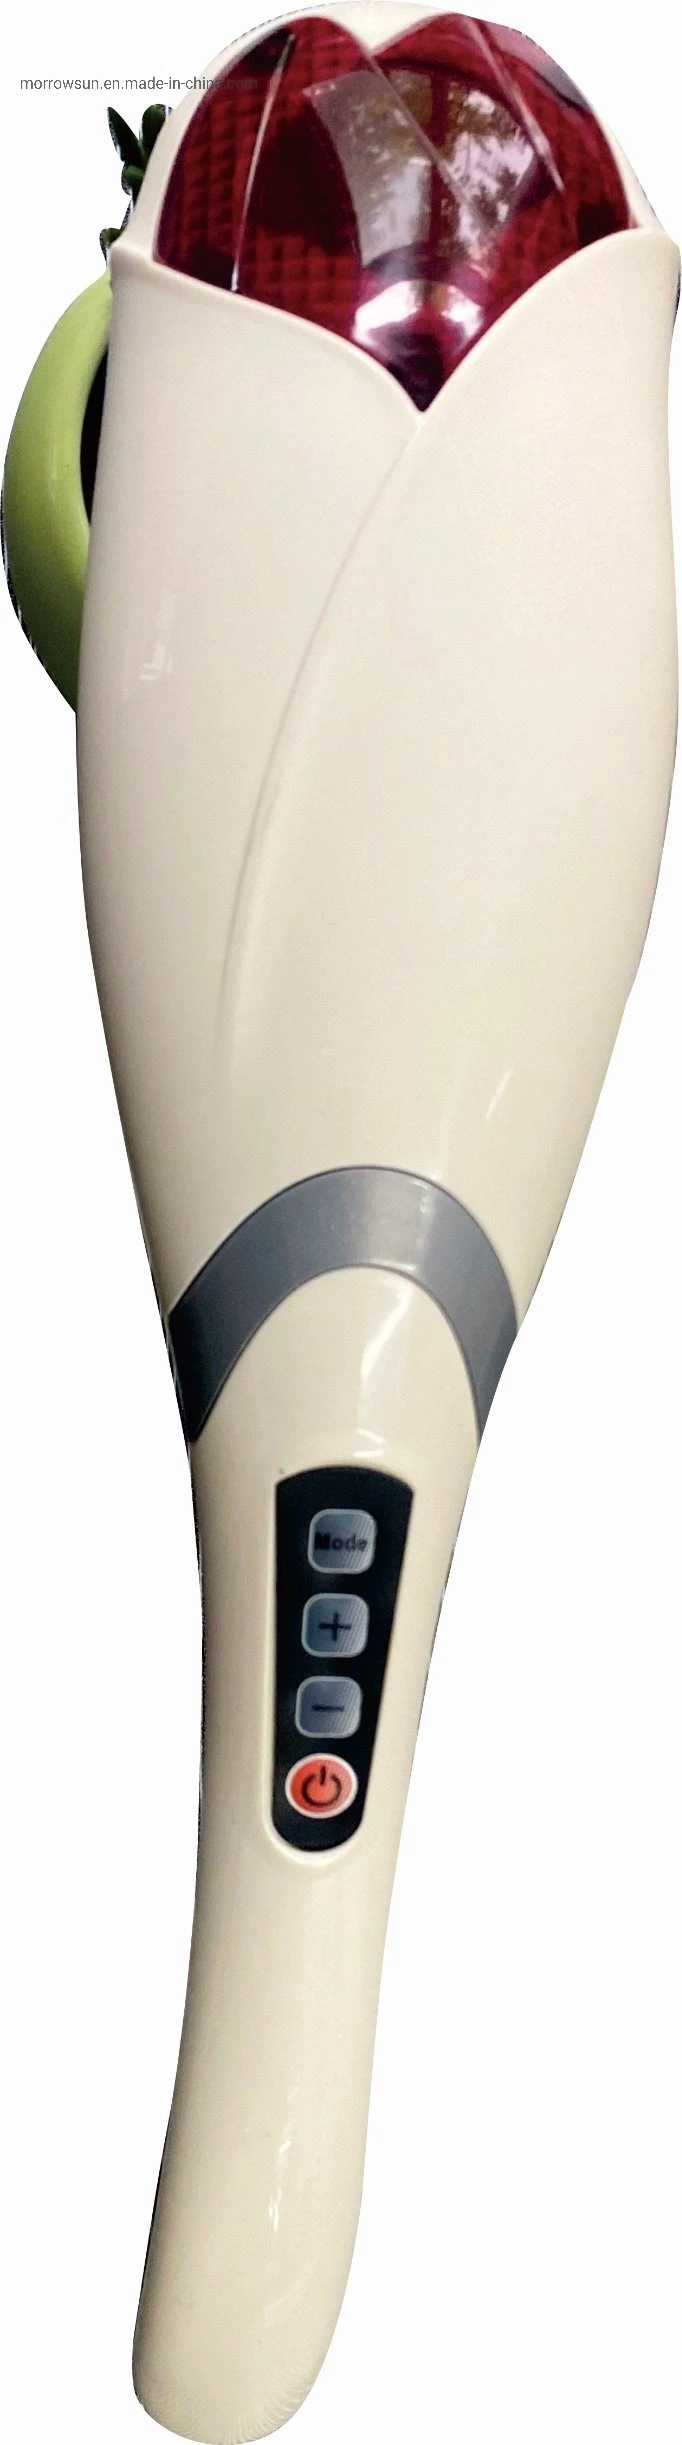 Беспроводной дизайн лотоса Инфракрасная терапия для всего тела Портативный ручной массаж Молоток с кабелем USB и мультивибрационной головкой